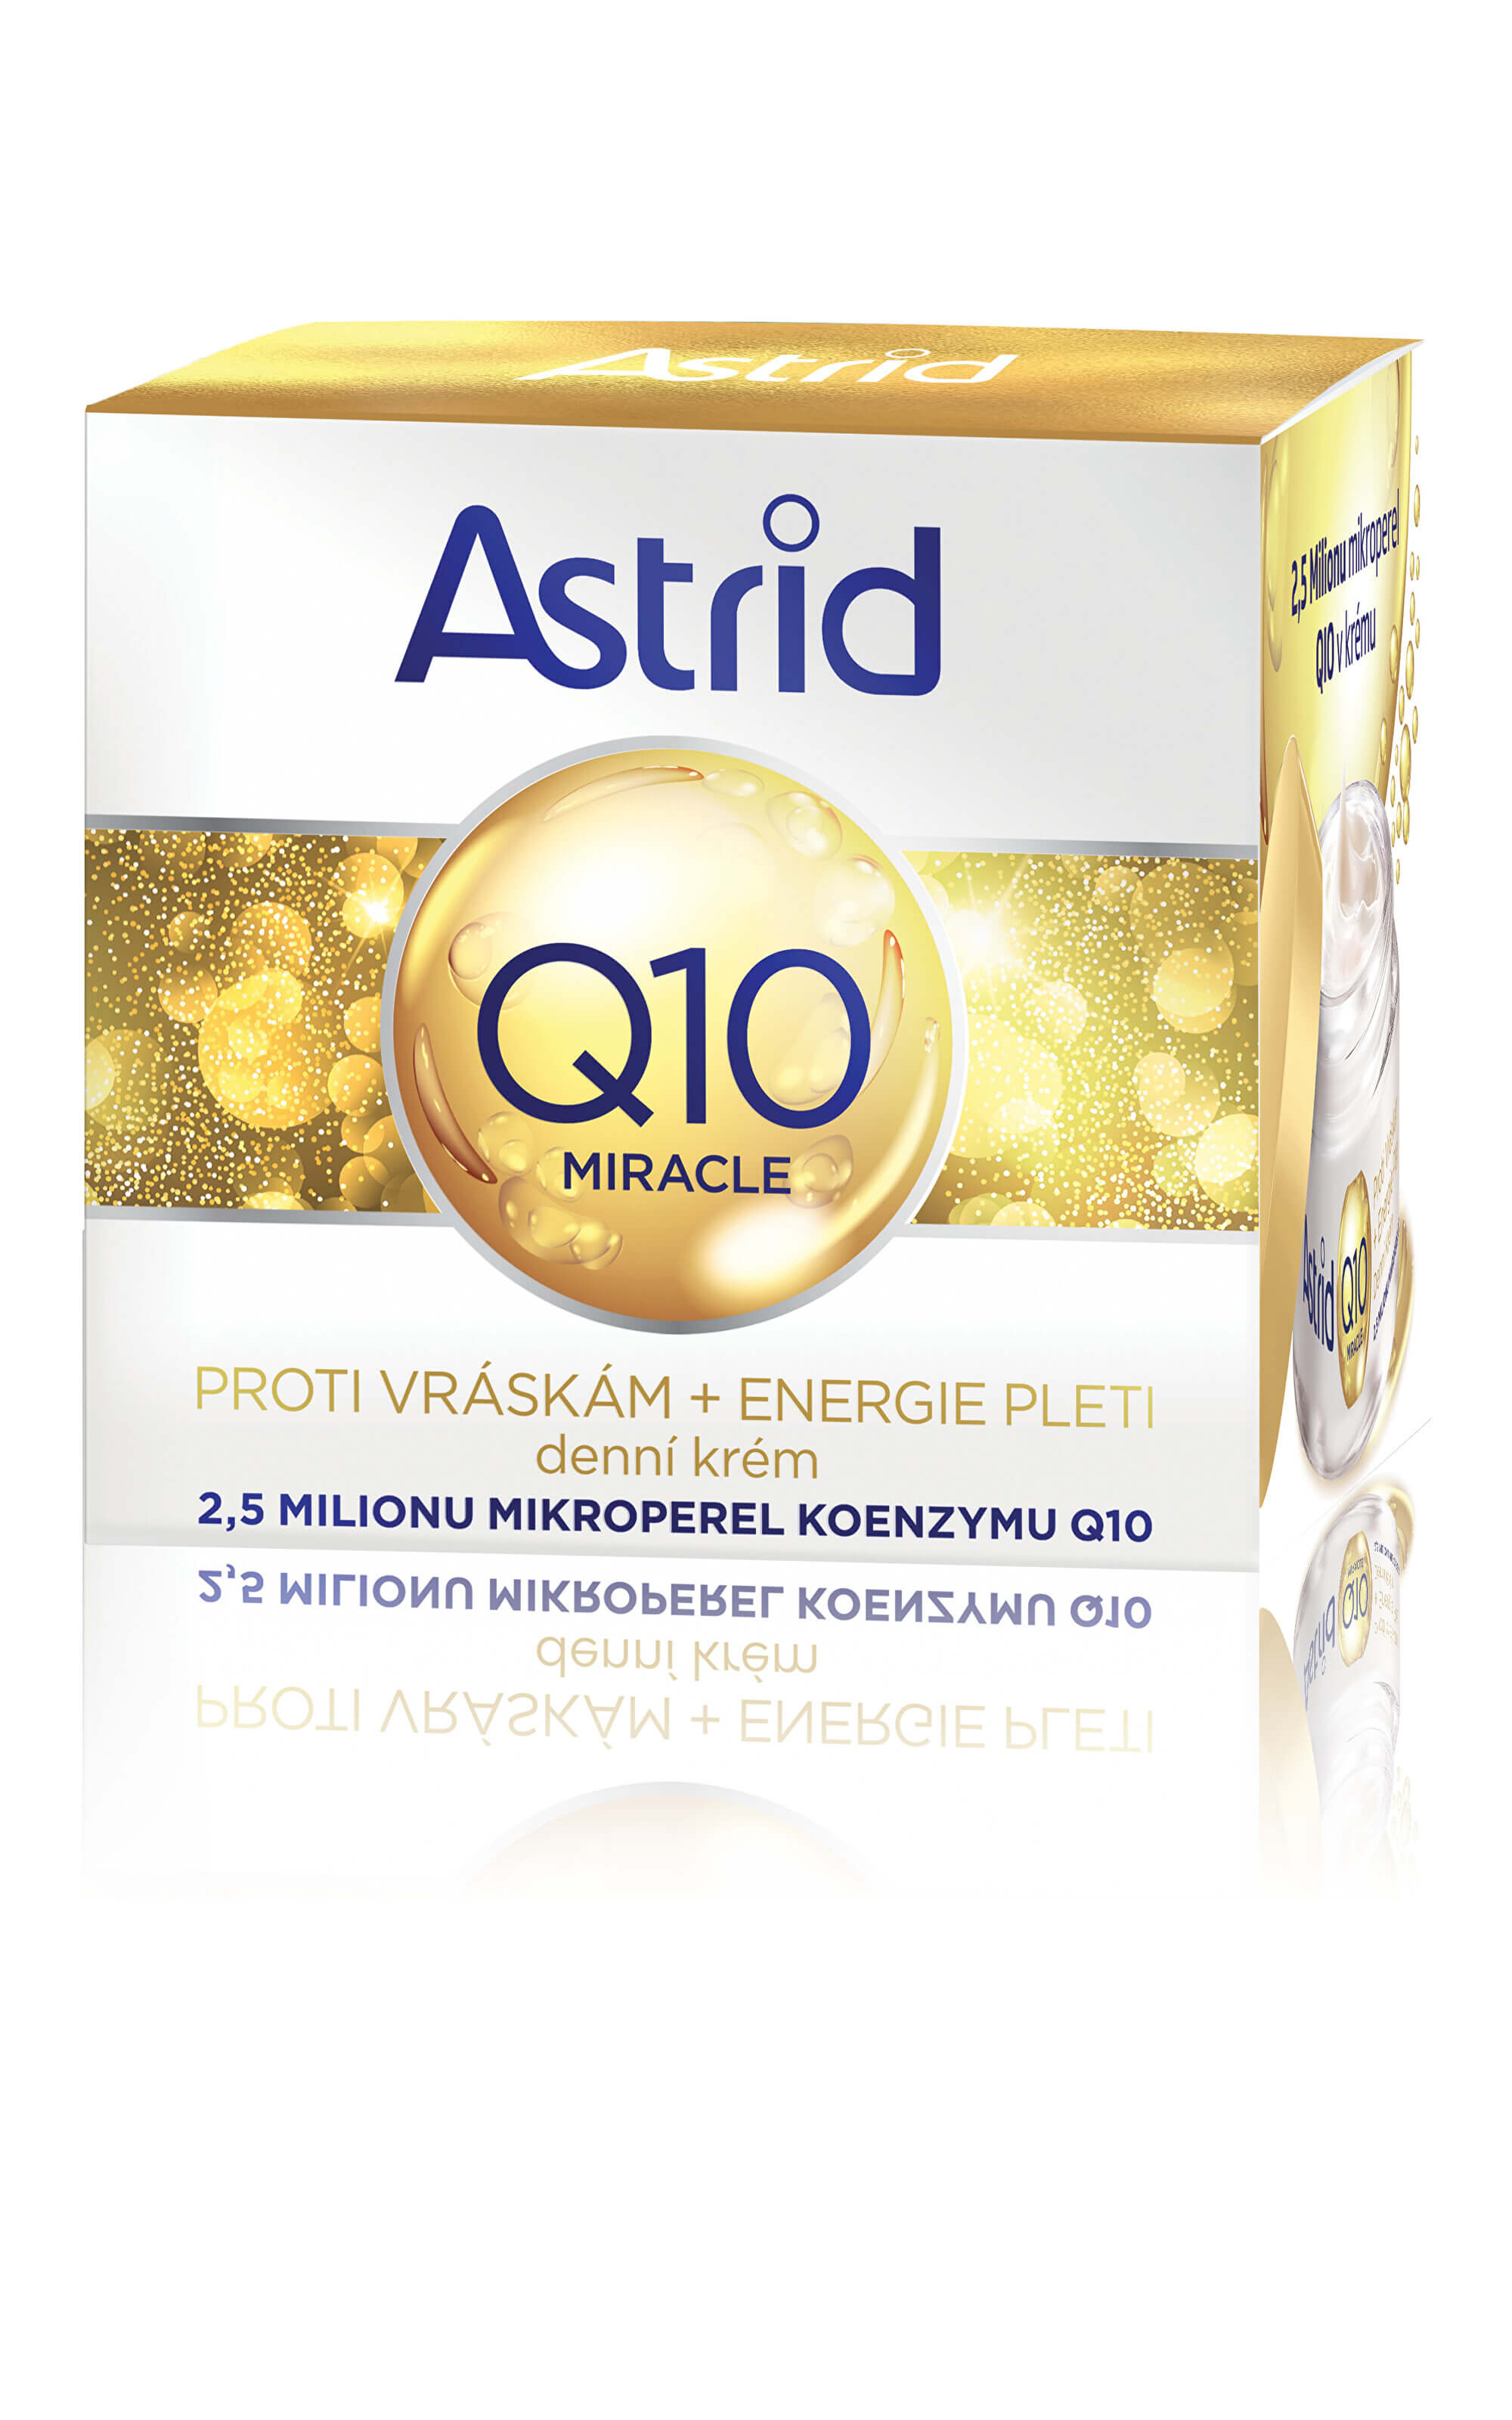 Astrid Denný krém proti vráskam Q10 Miracle 50 ml